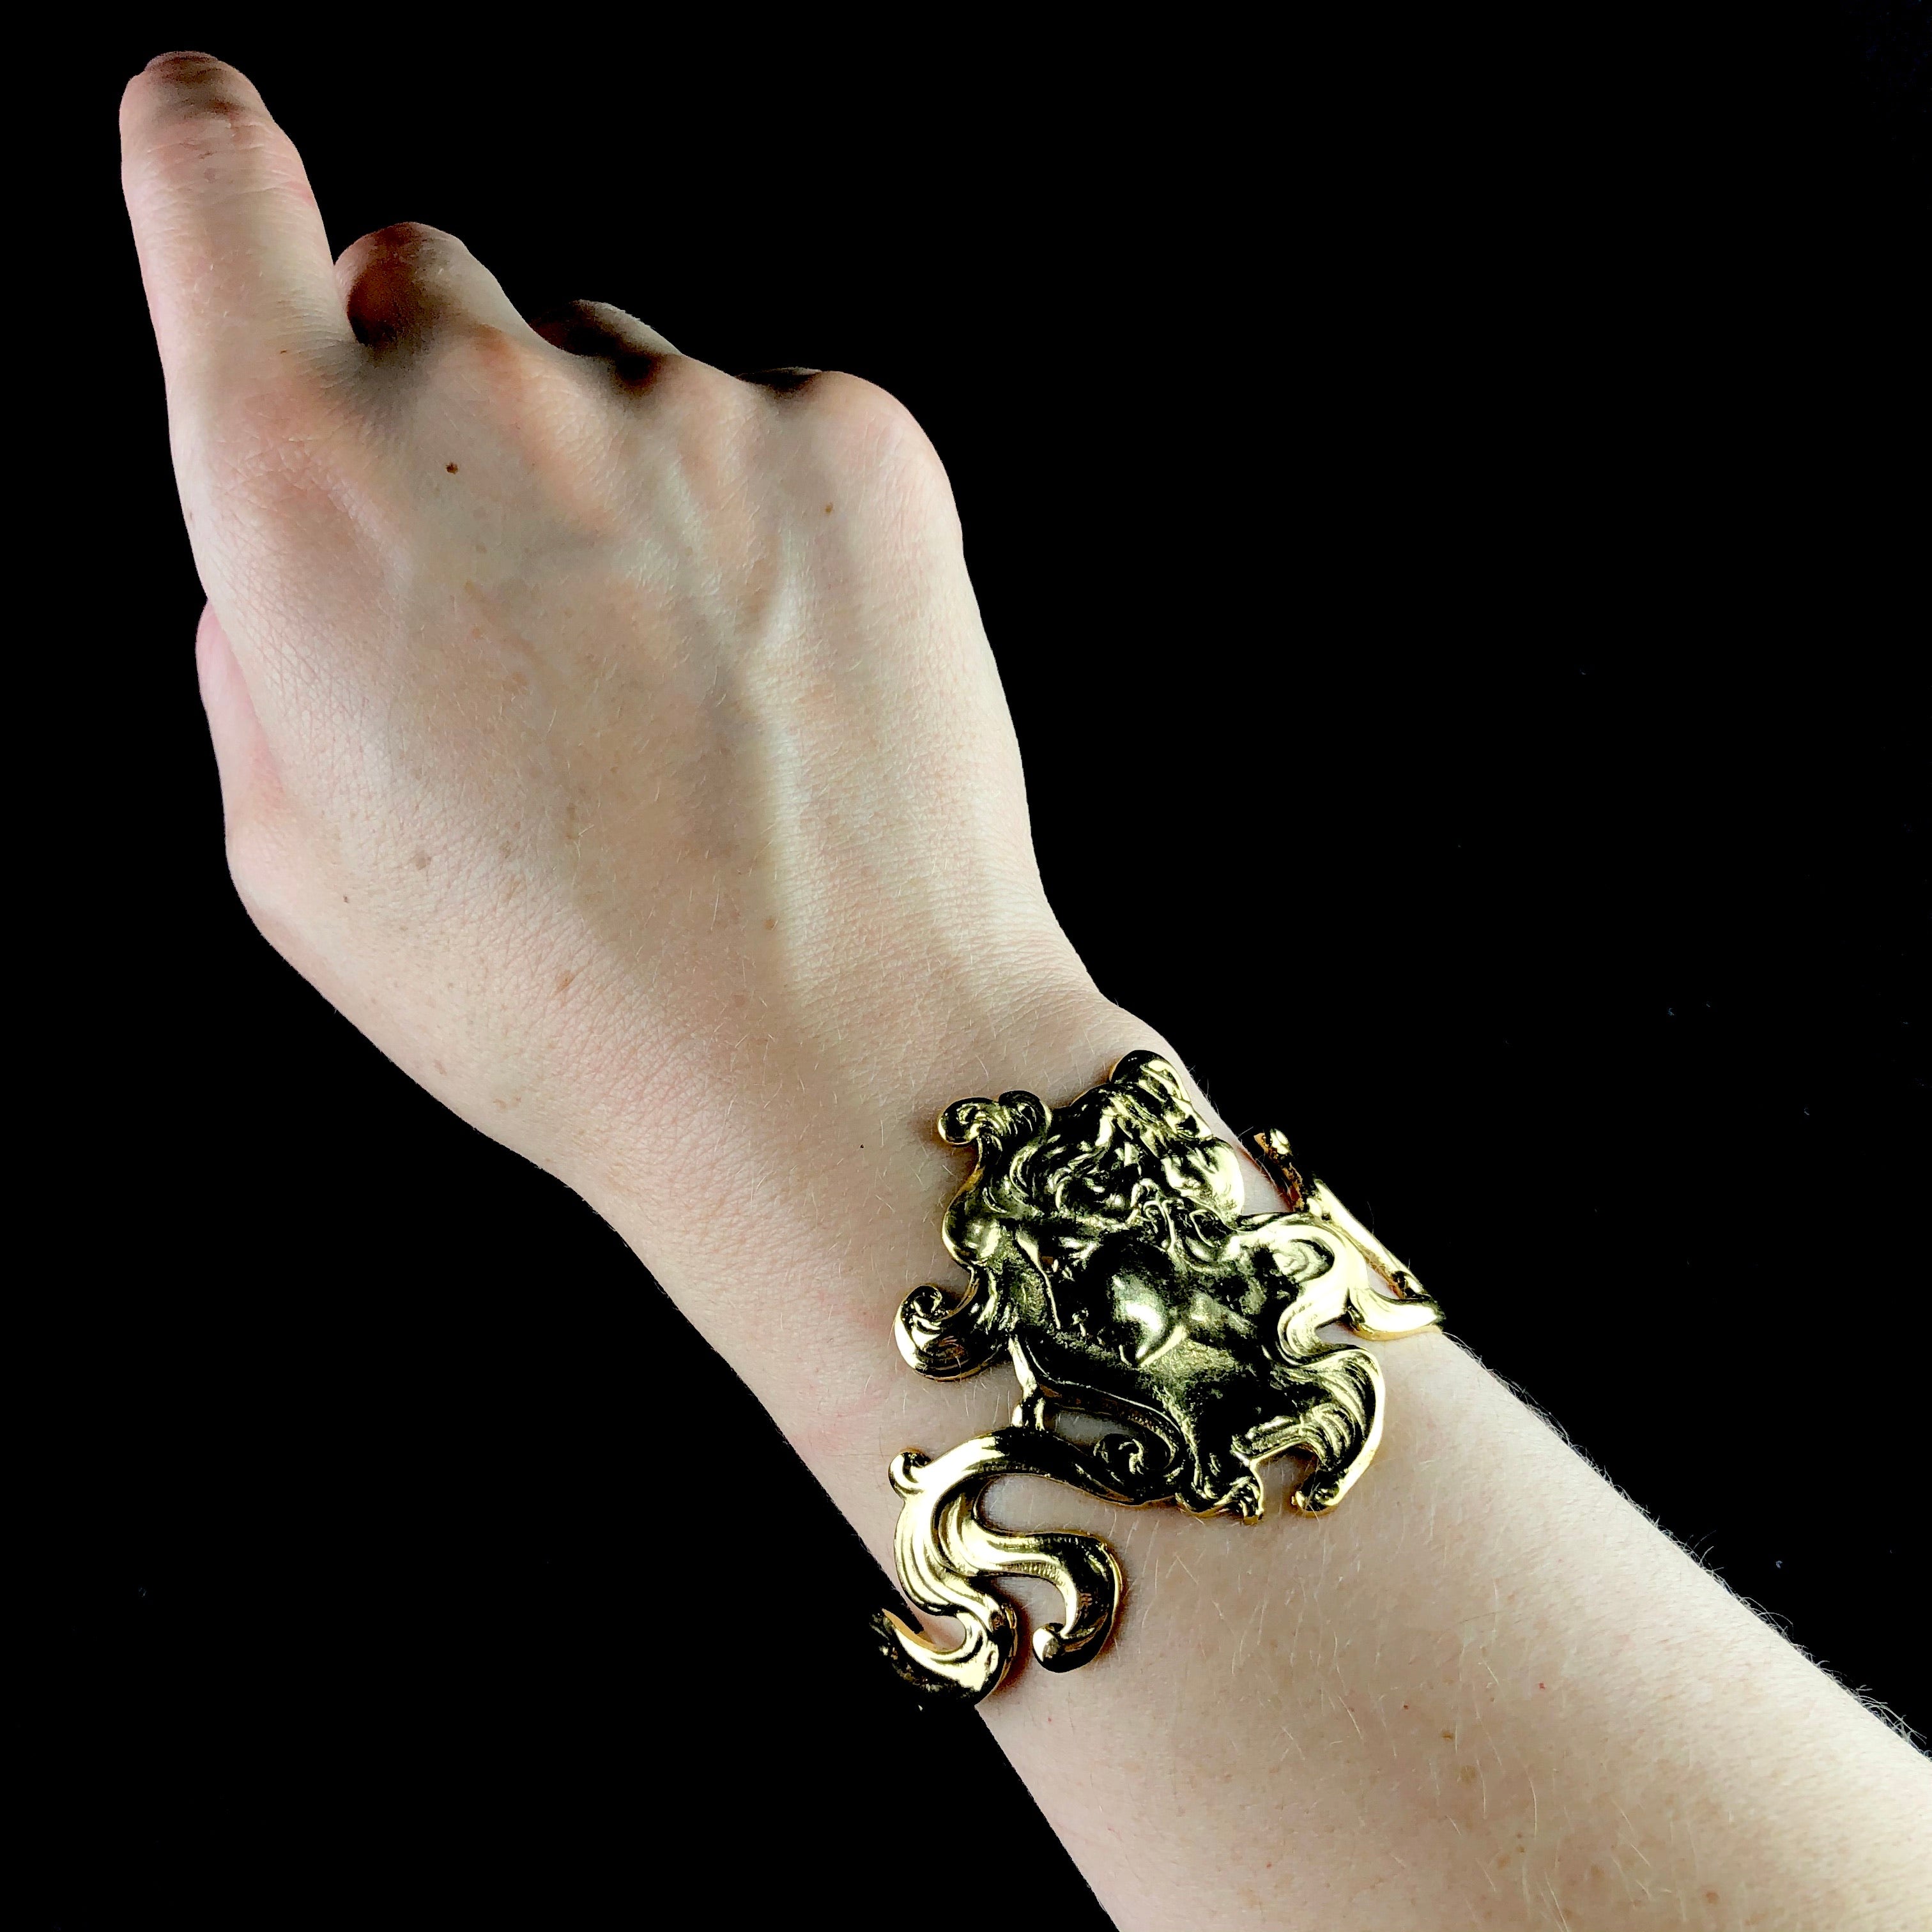 Gold Nouveau Cuff shown worn on wrist